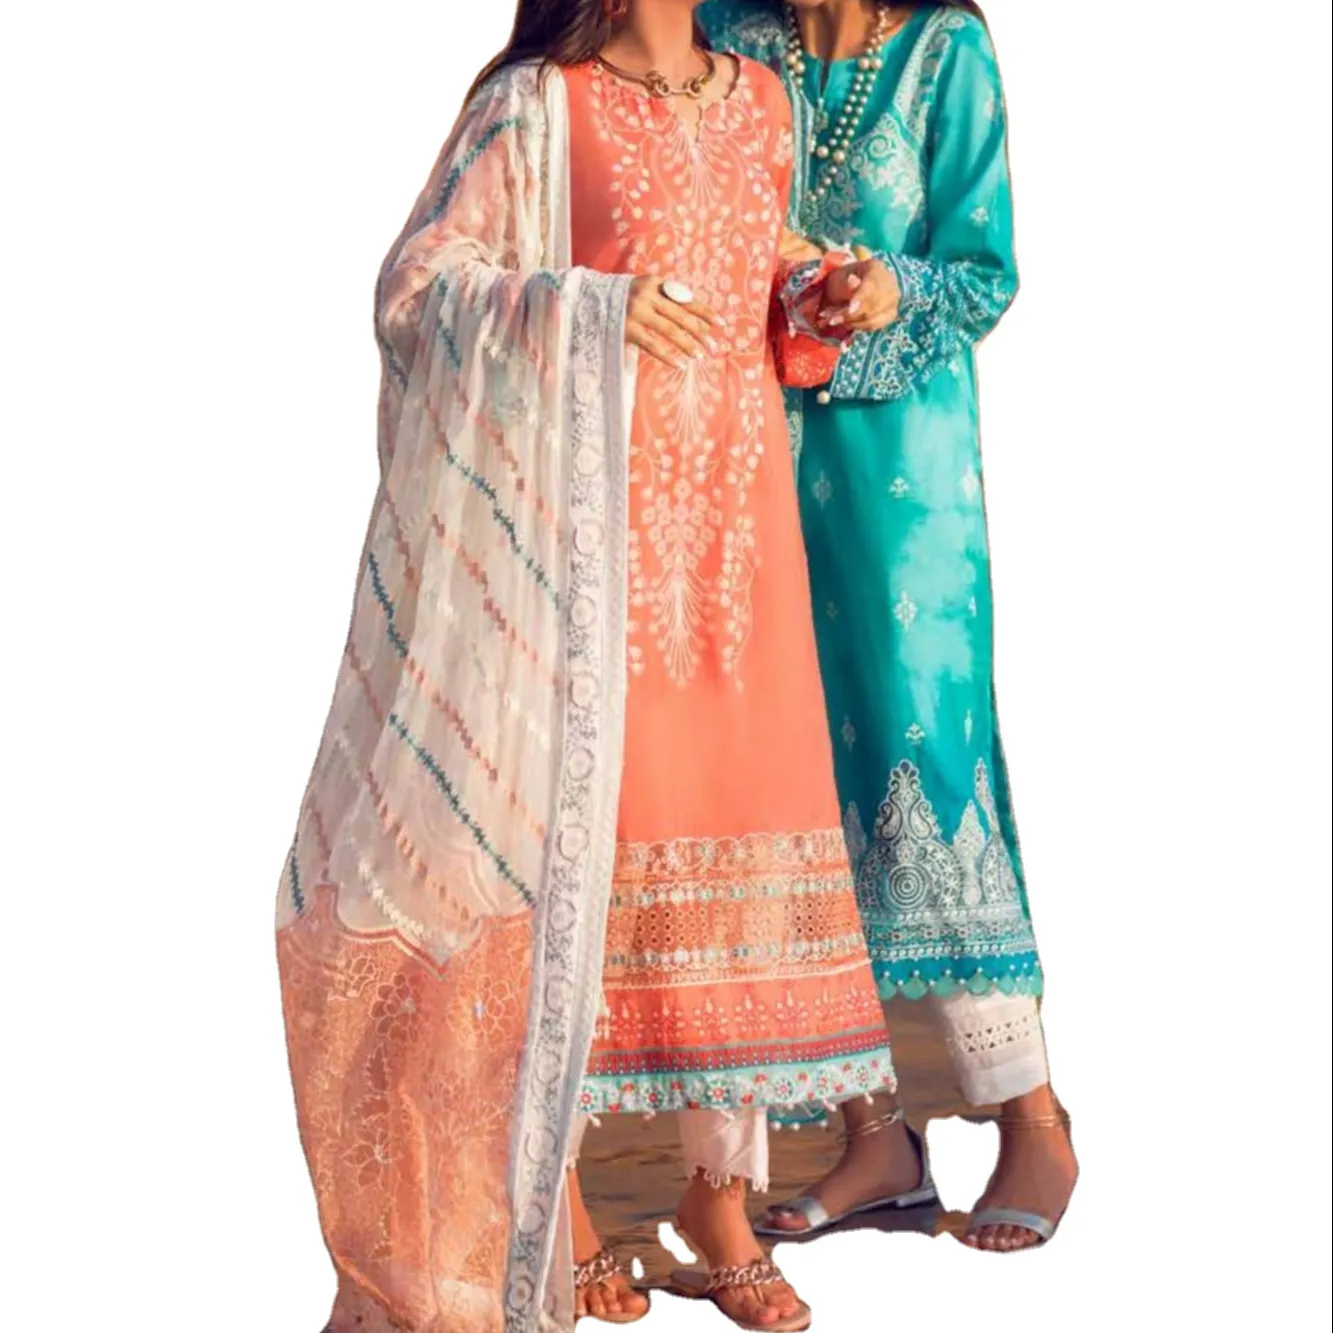 Salwar kameez takım tasarımcı hint pakistanlı yeni üst tasarım boyun işlemeli baskılı elbise çim Kurti koleksiyonu